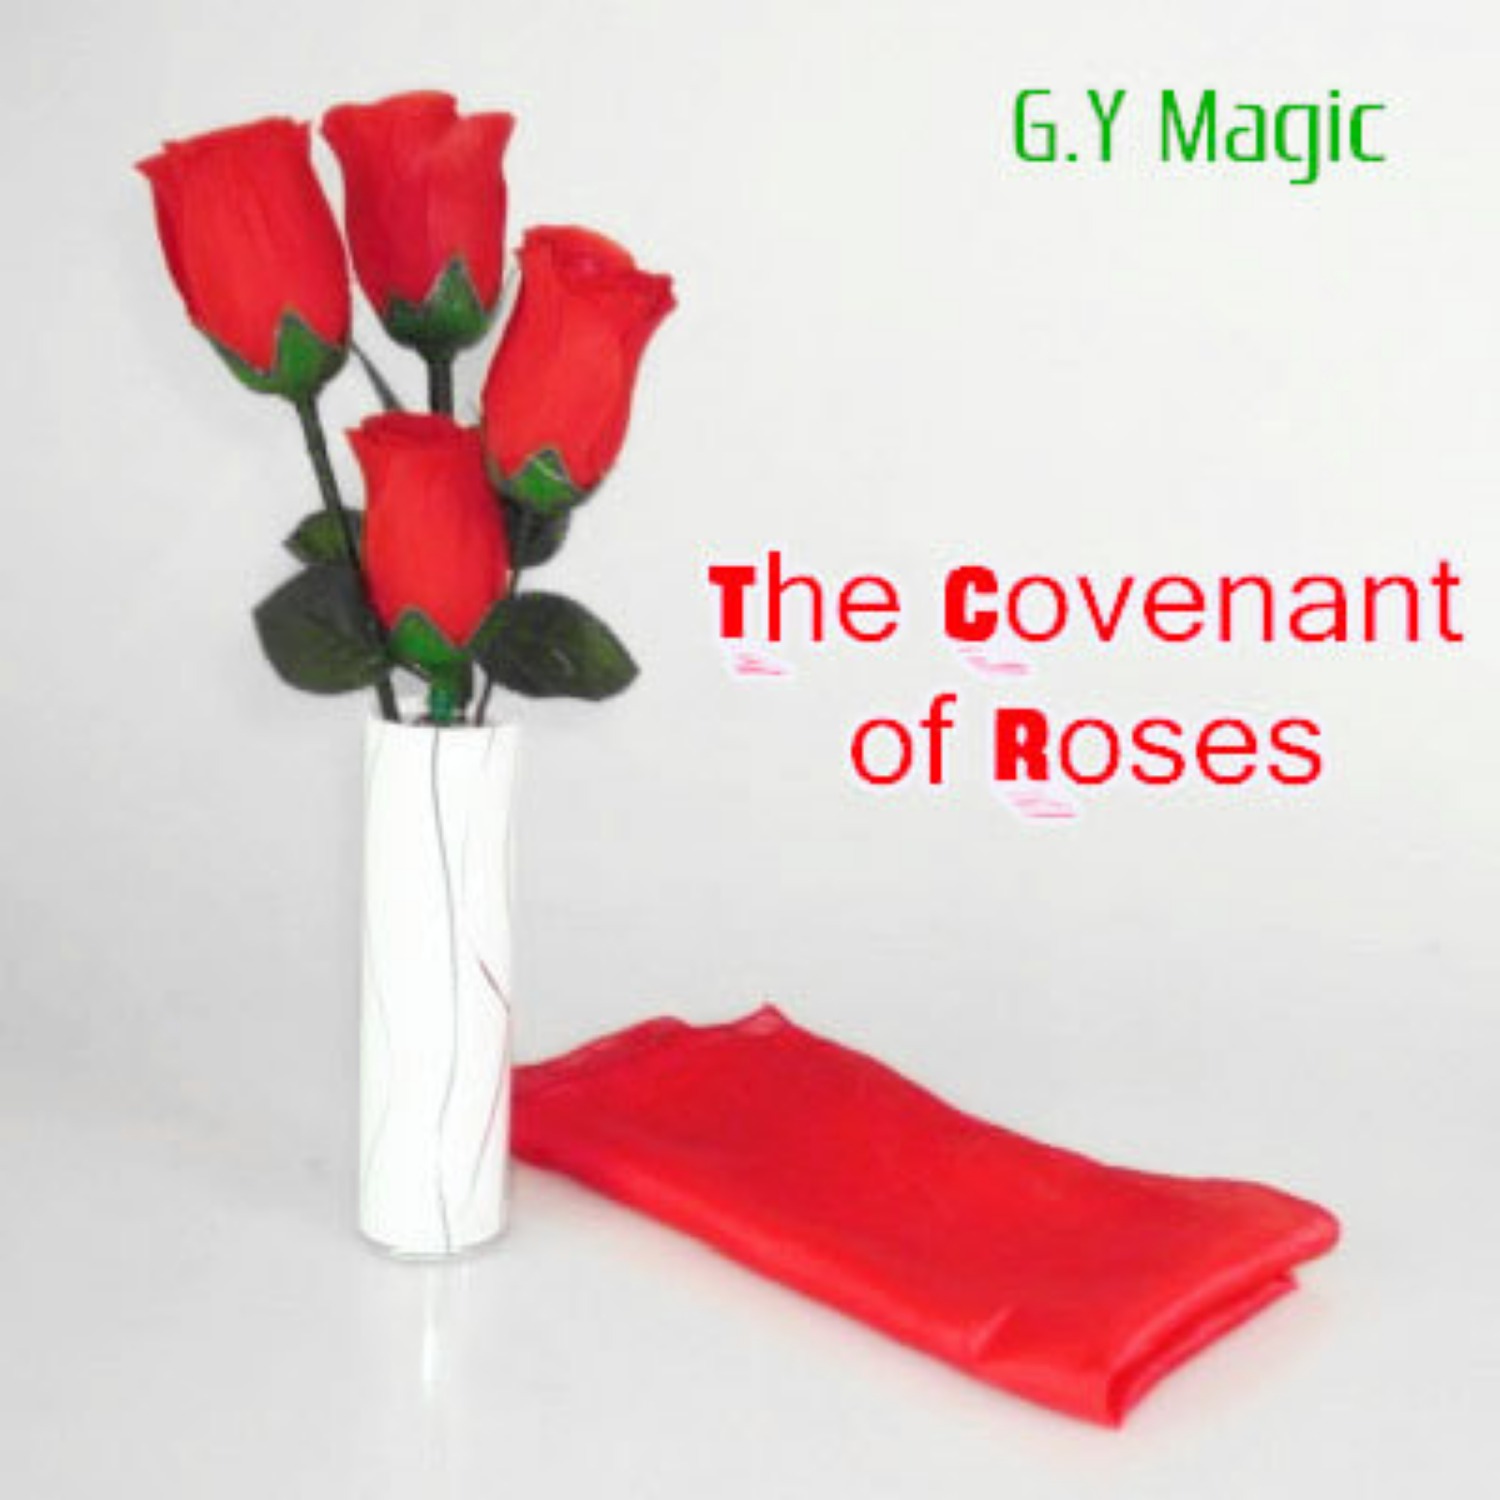 [커버넌트로즈] The Covenant of Roses by G.Y Magic 특별한 꽃마술 공연을 소개합니다.